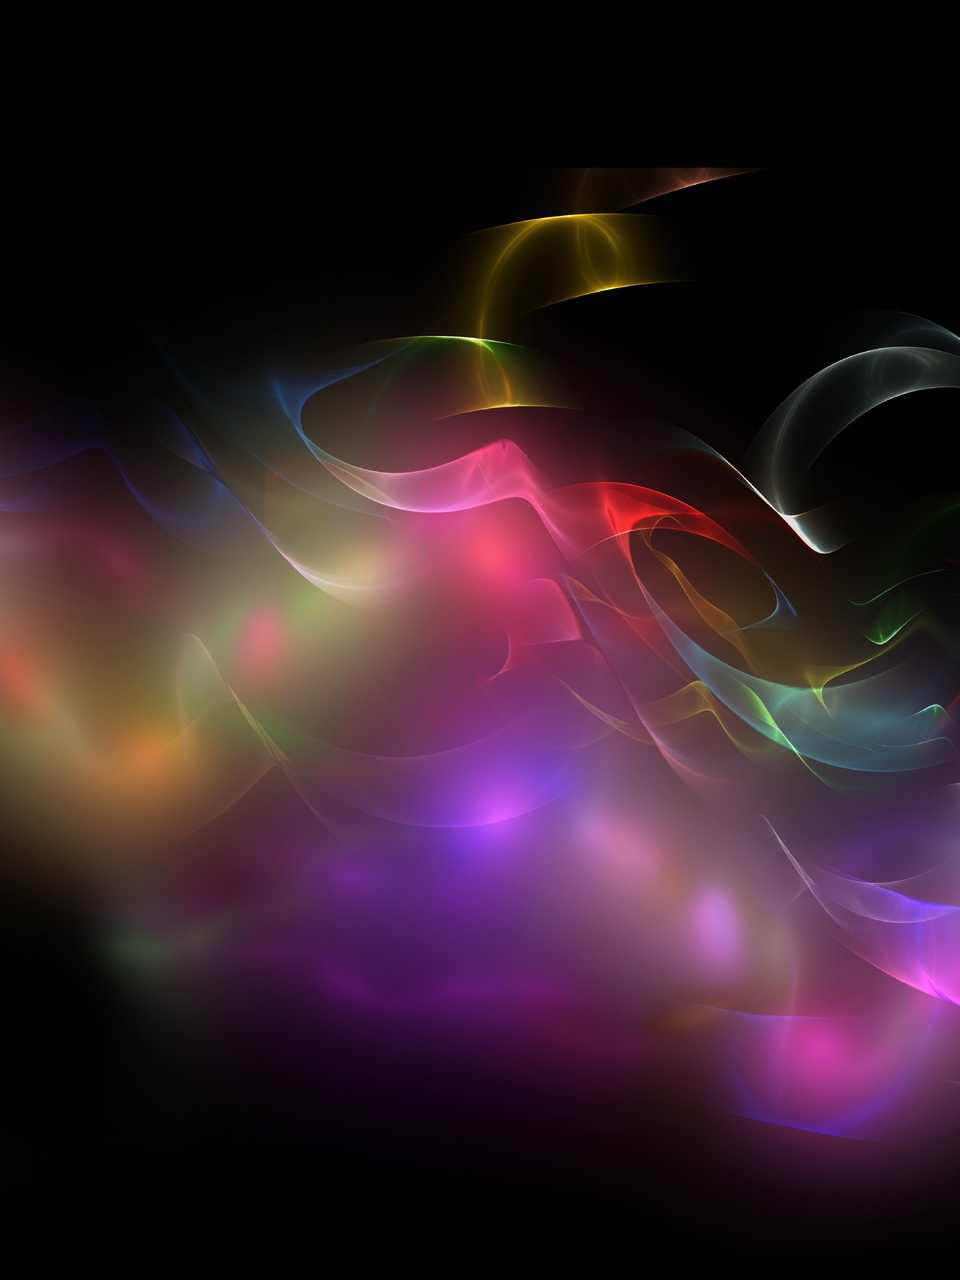 Image: Blur, colors, lines, curves